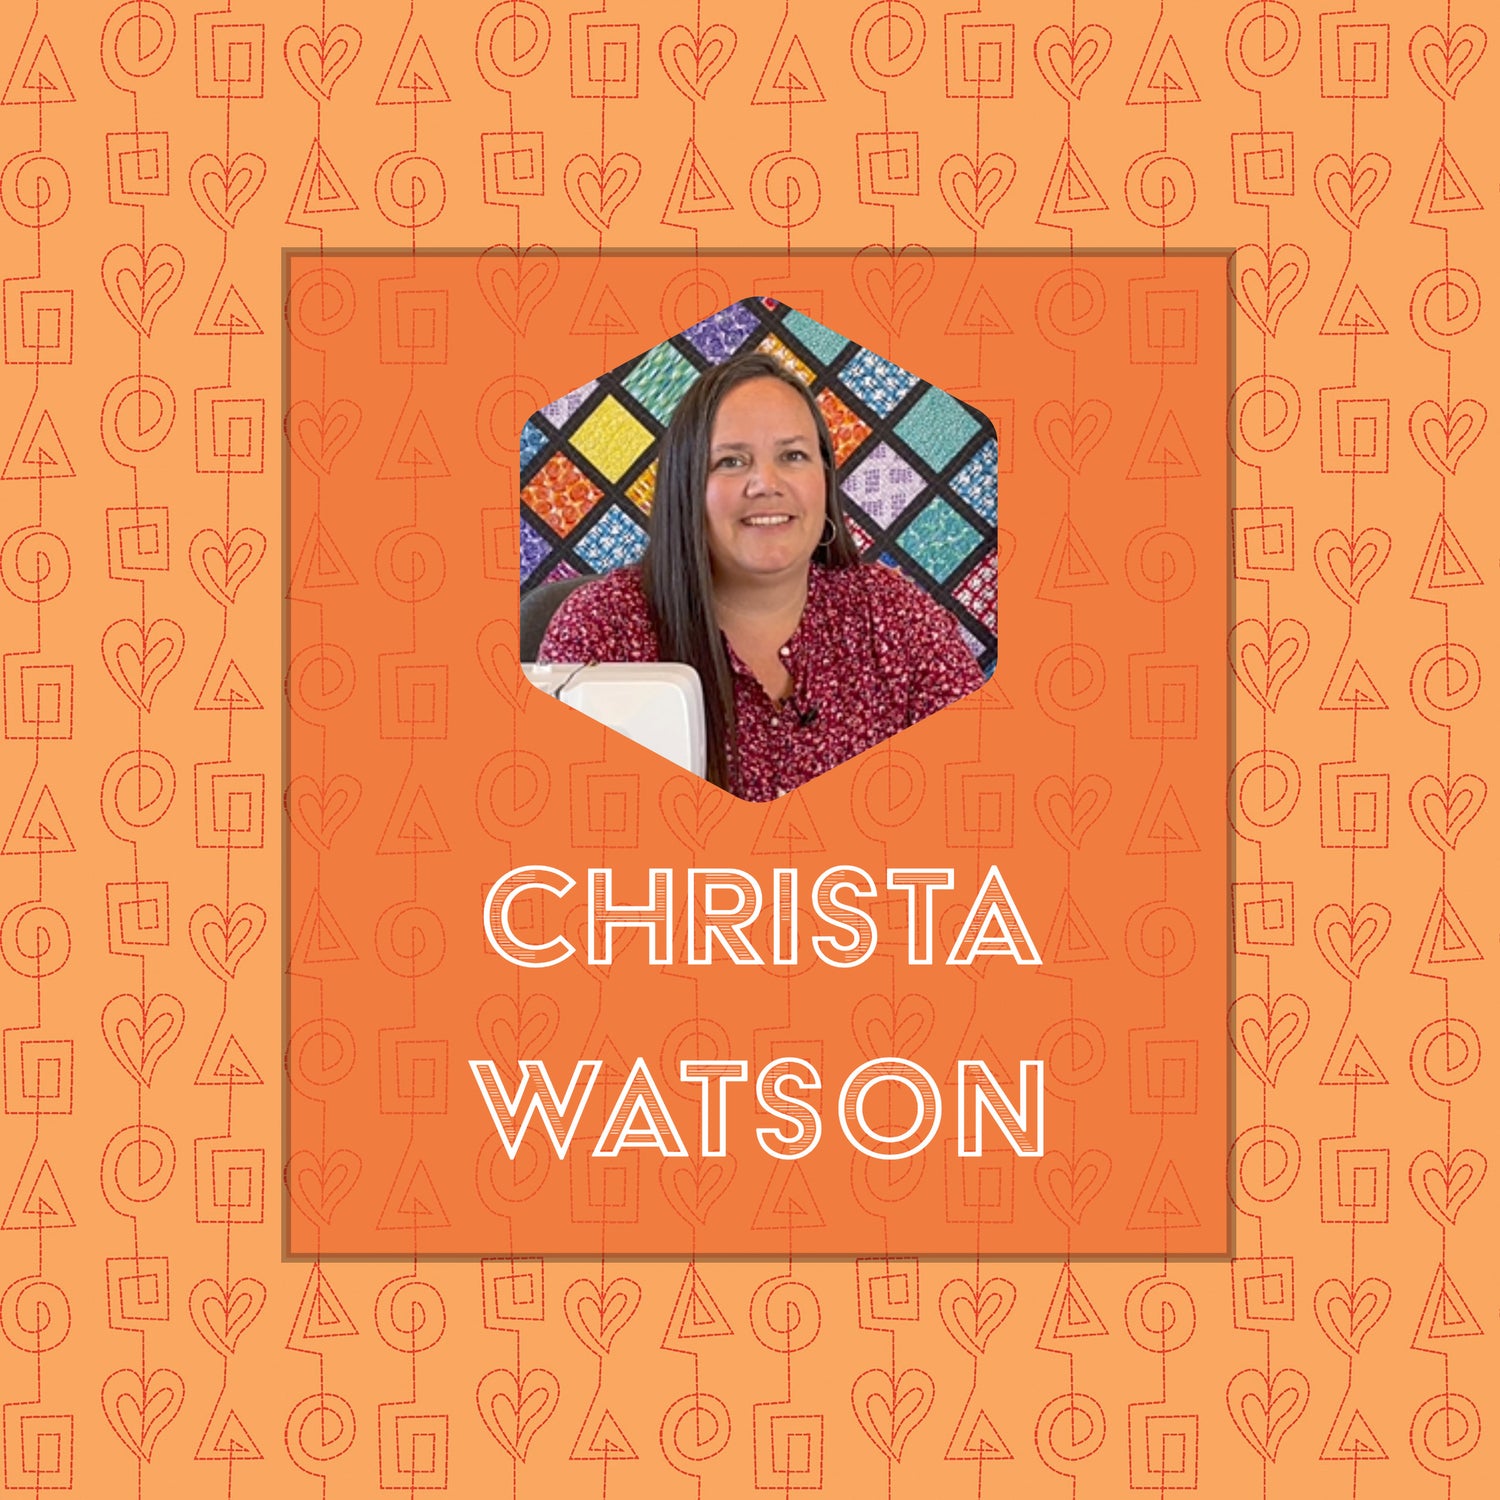 Christa Watson